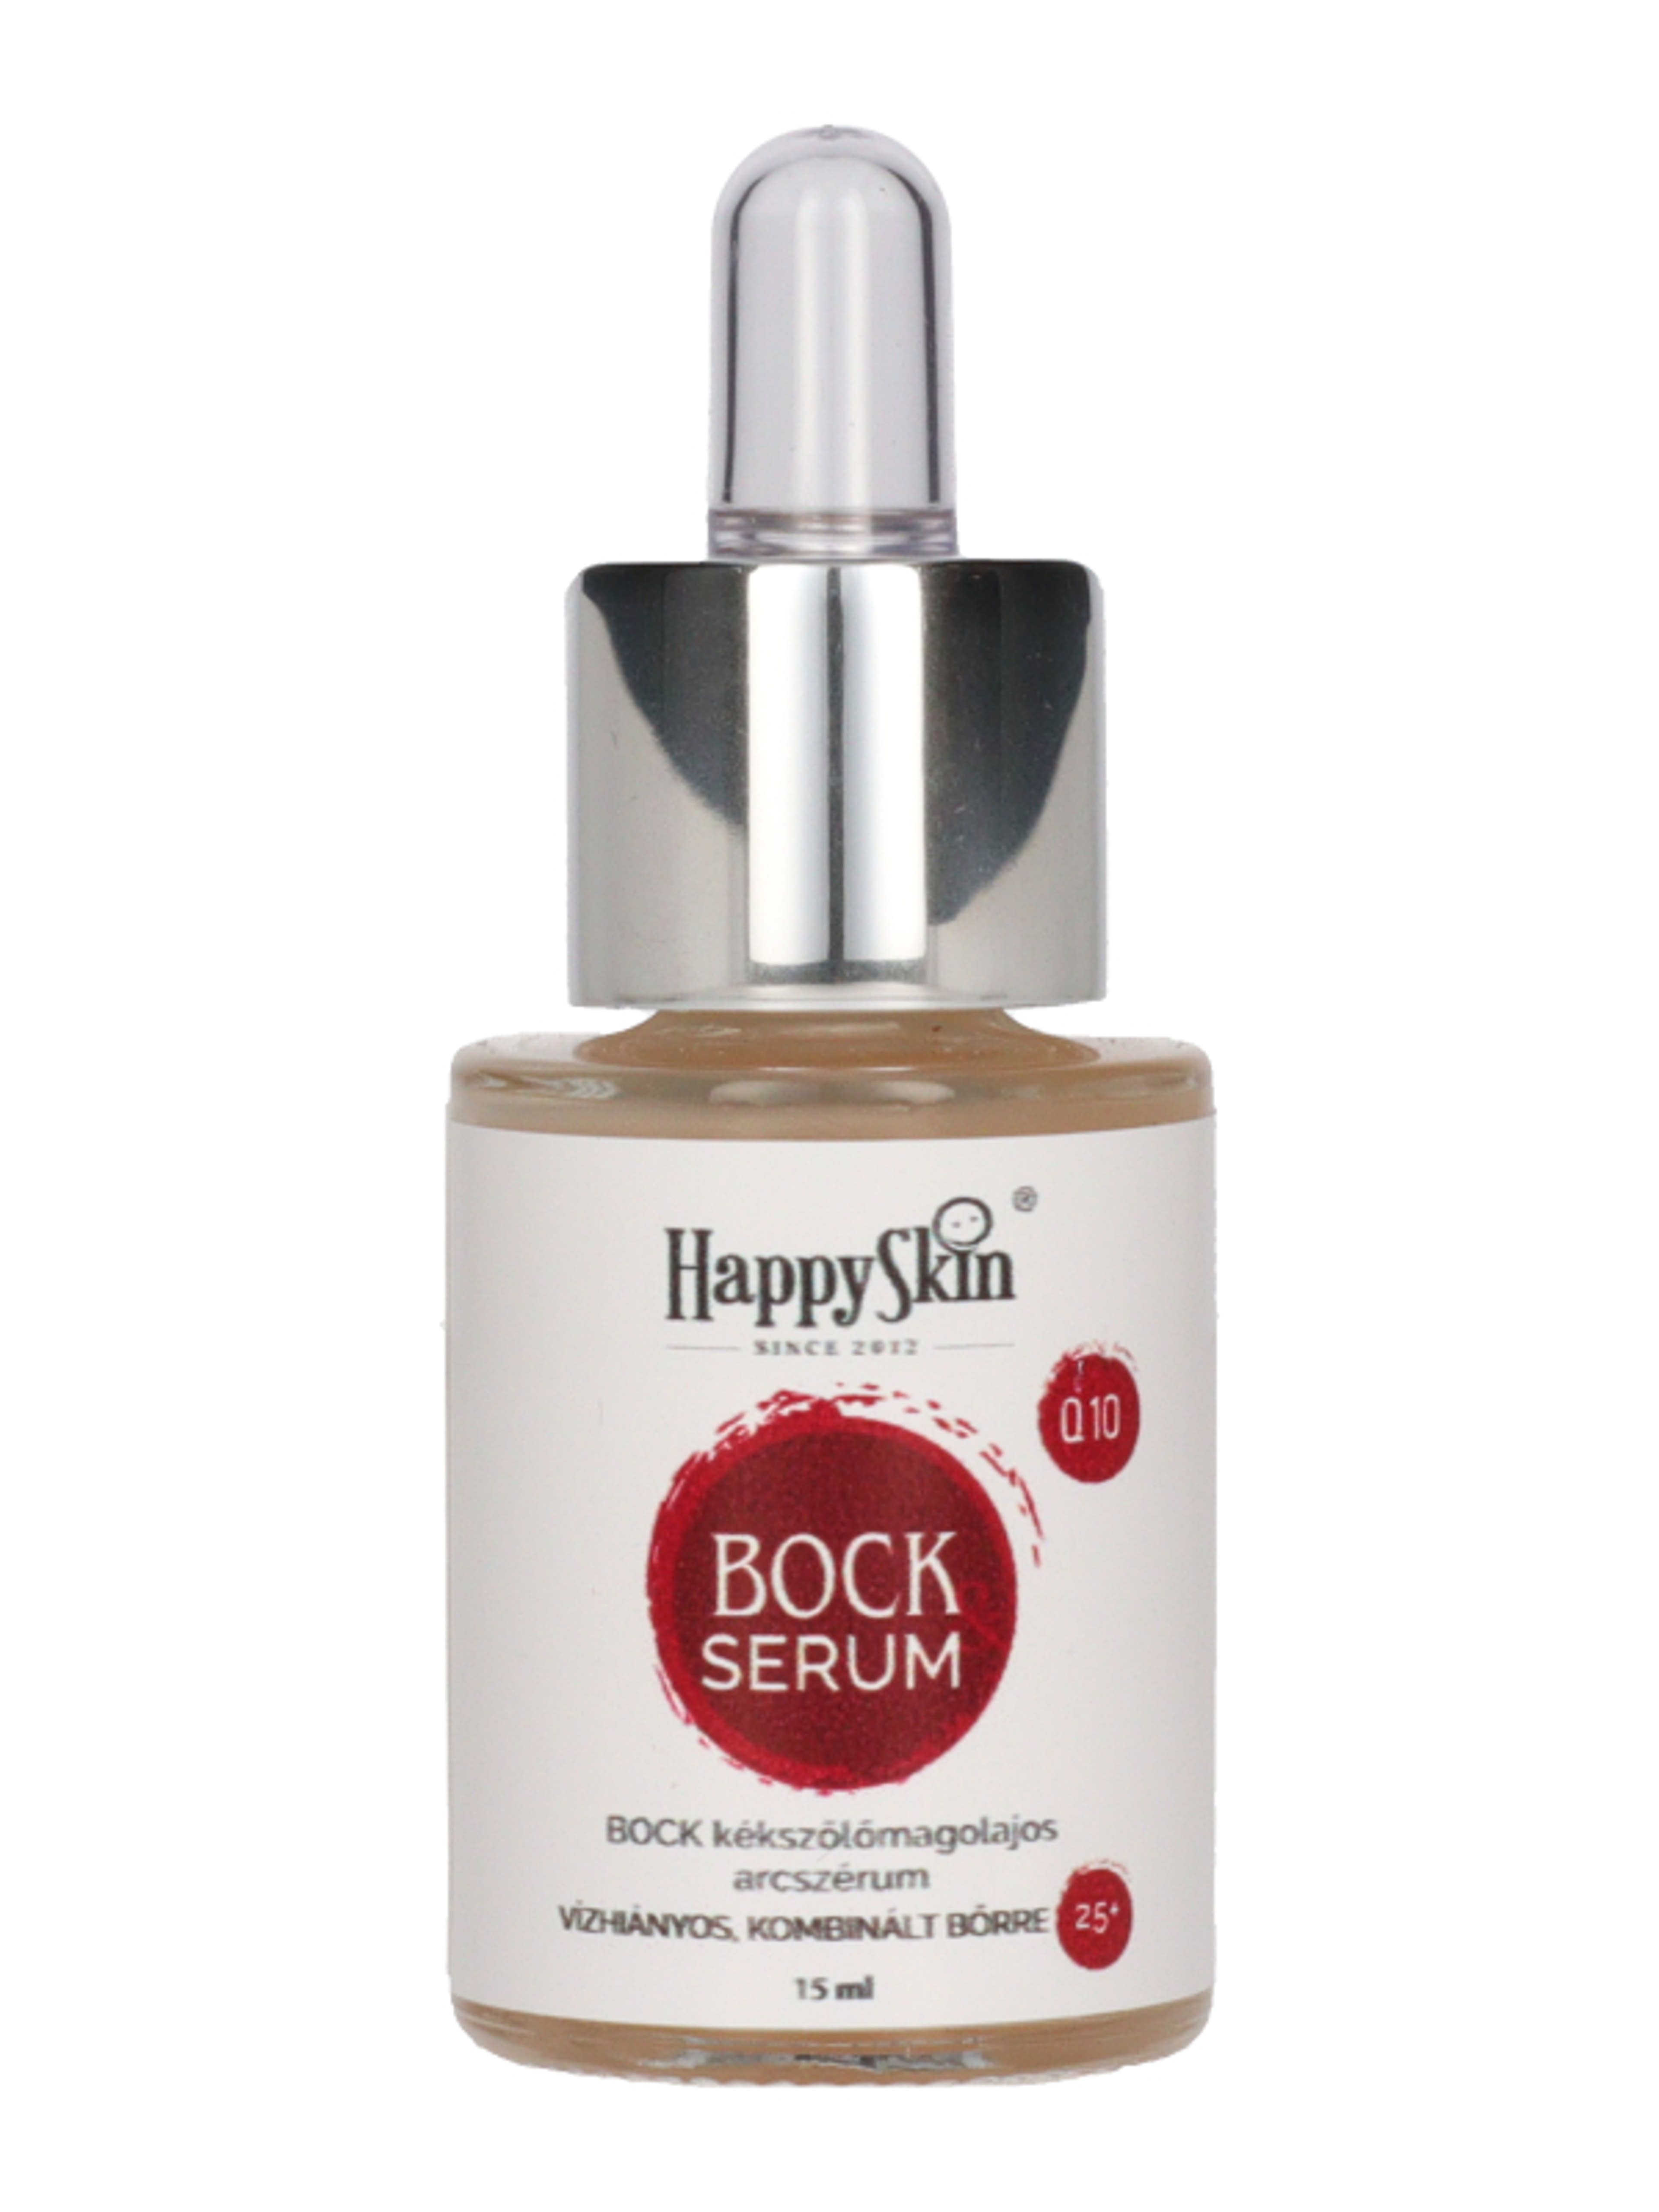 HappySkin Bock szérum kékszölőmagolajos - 15 ml-1